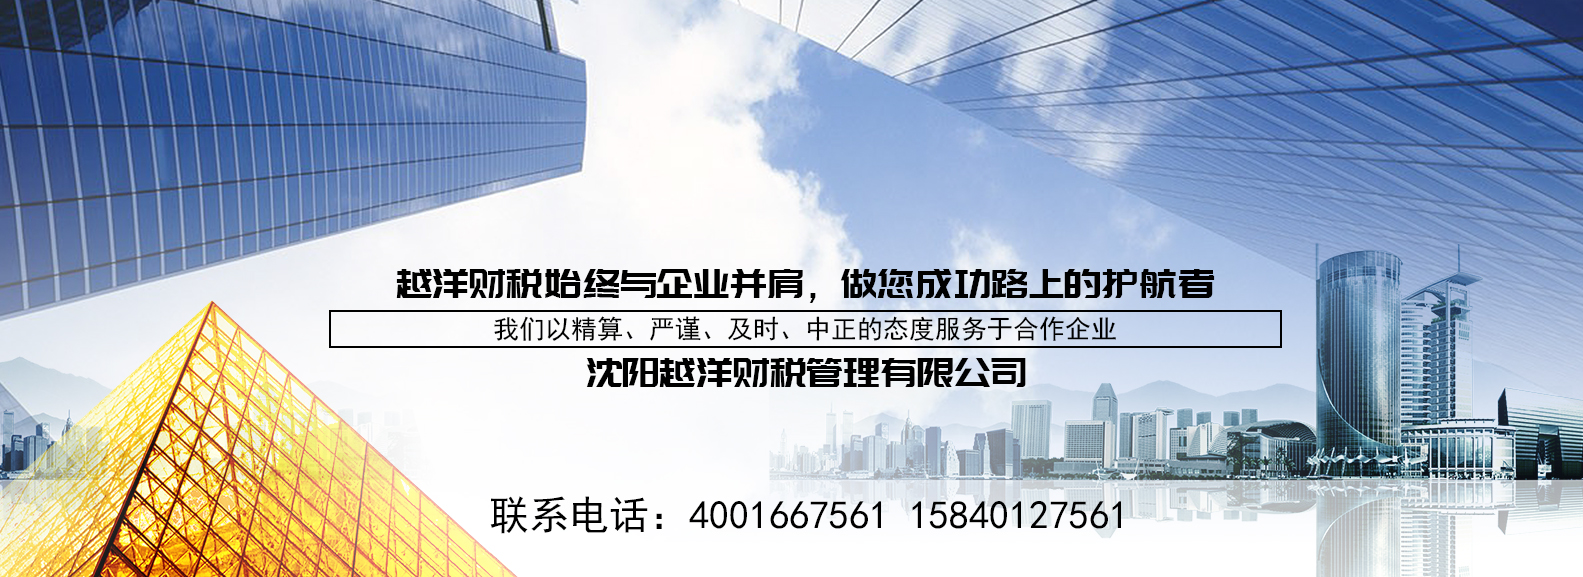 莱芜沈阳工商代理注册公司选择购买富海360seo优化工具一套